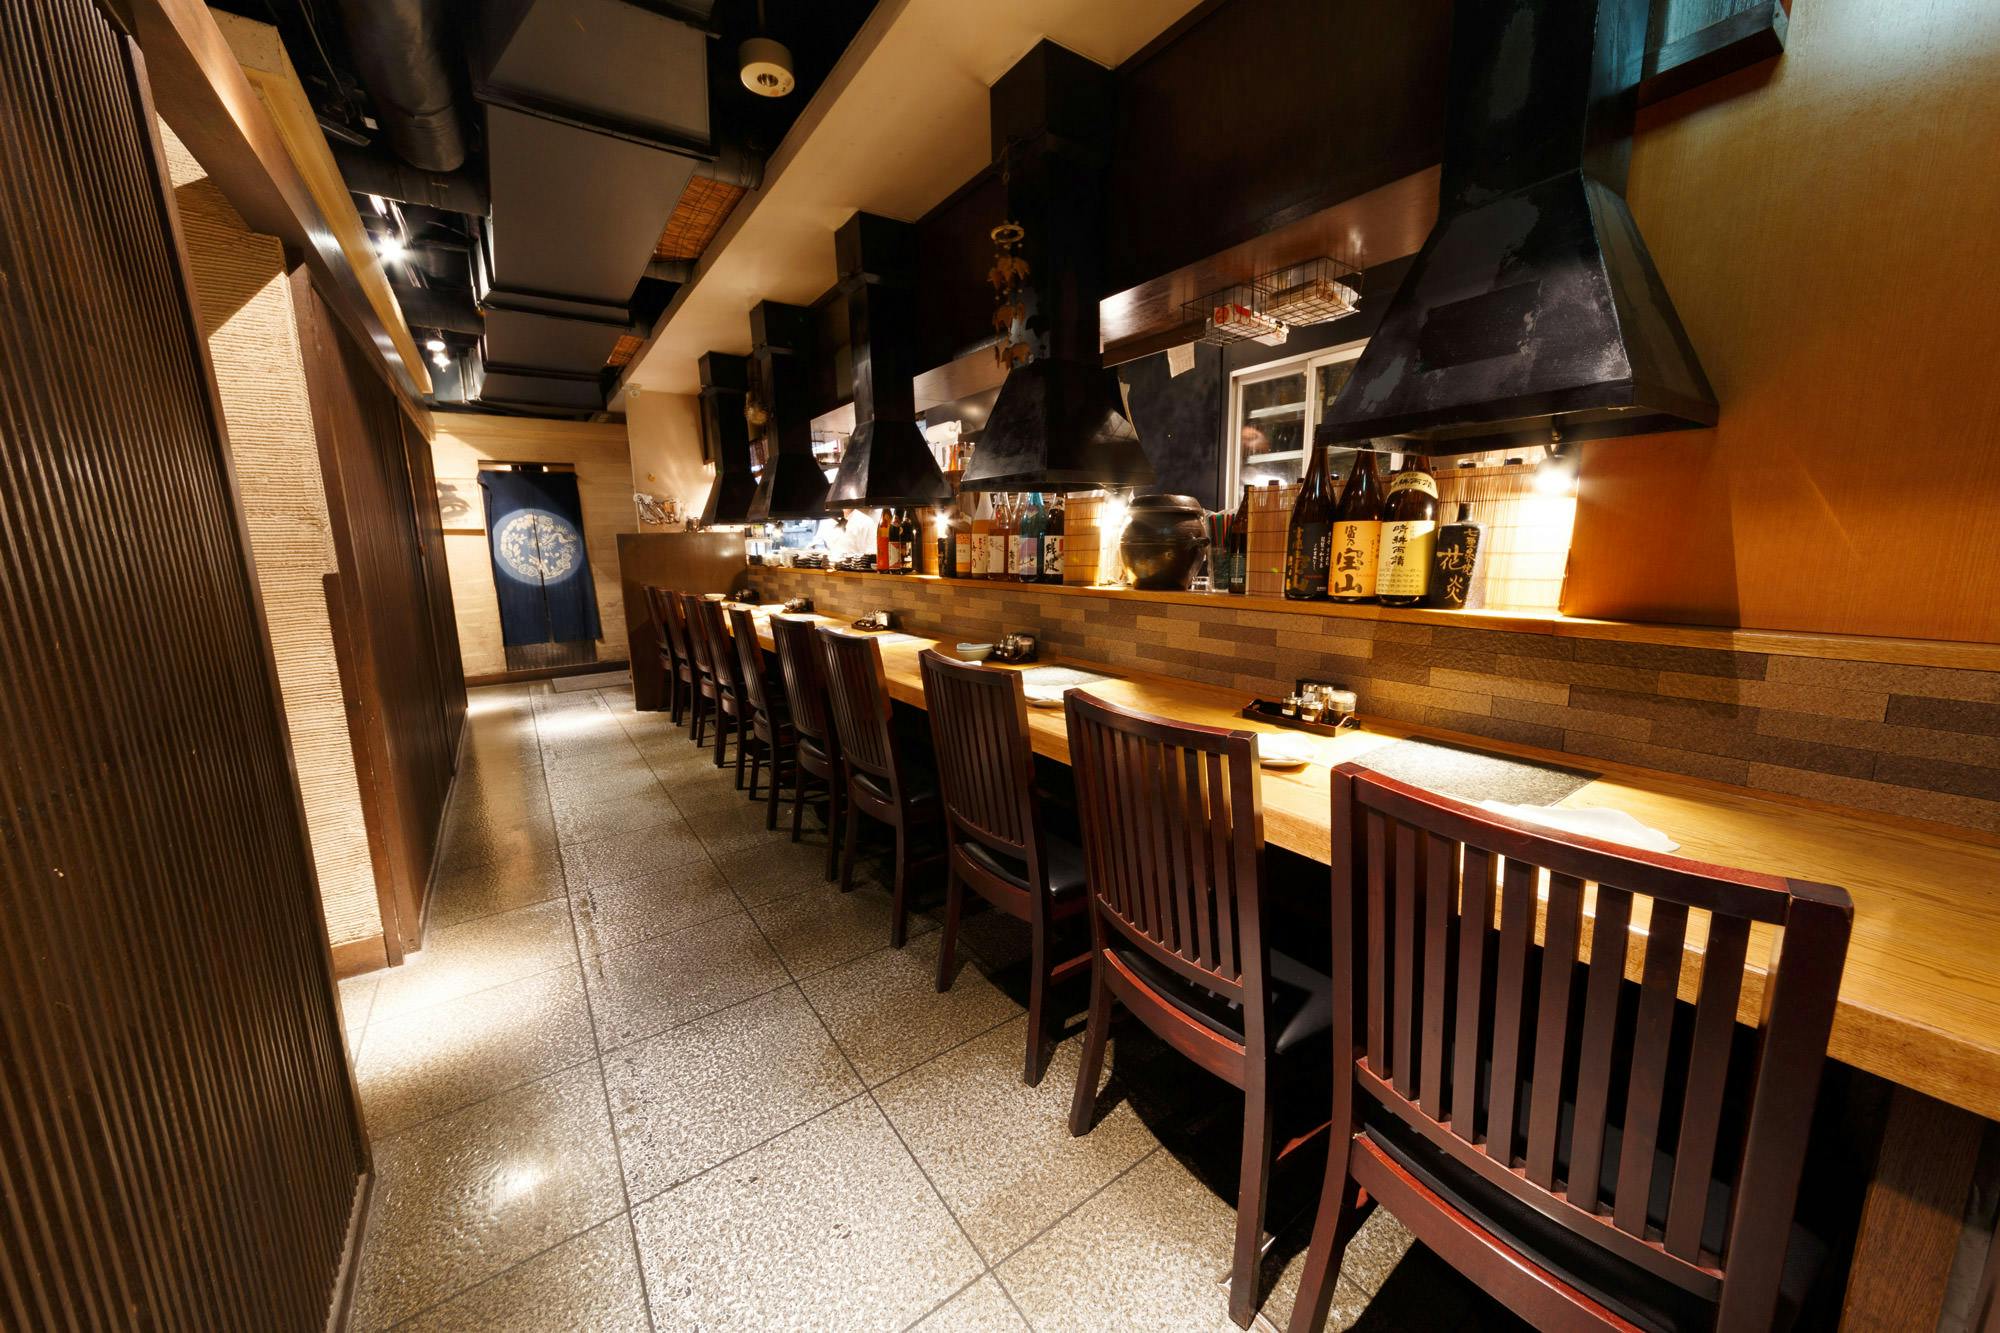 新宿南口グルメ レストラン45選 絶対行きたいおすすめレストラン Okaimonoモール レストラン